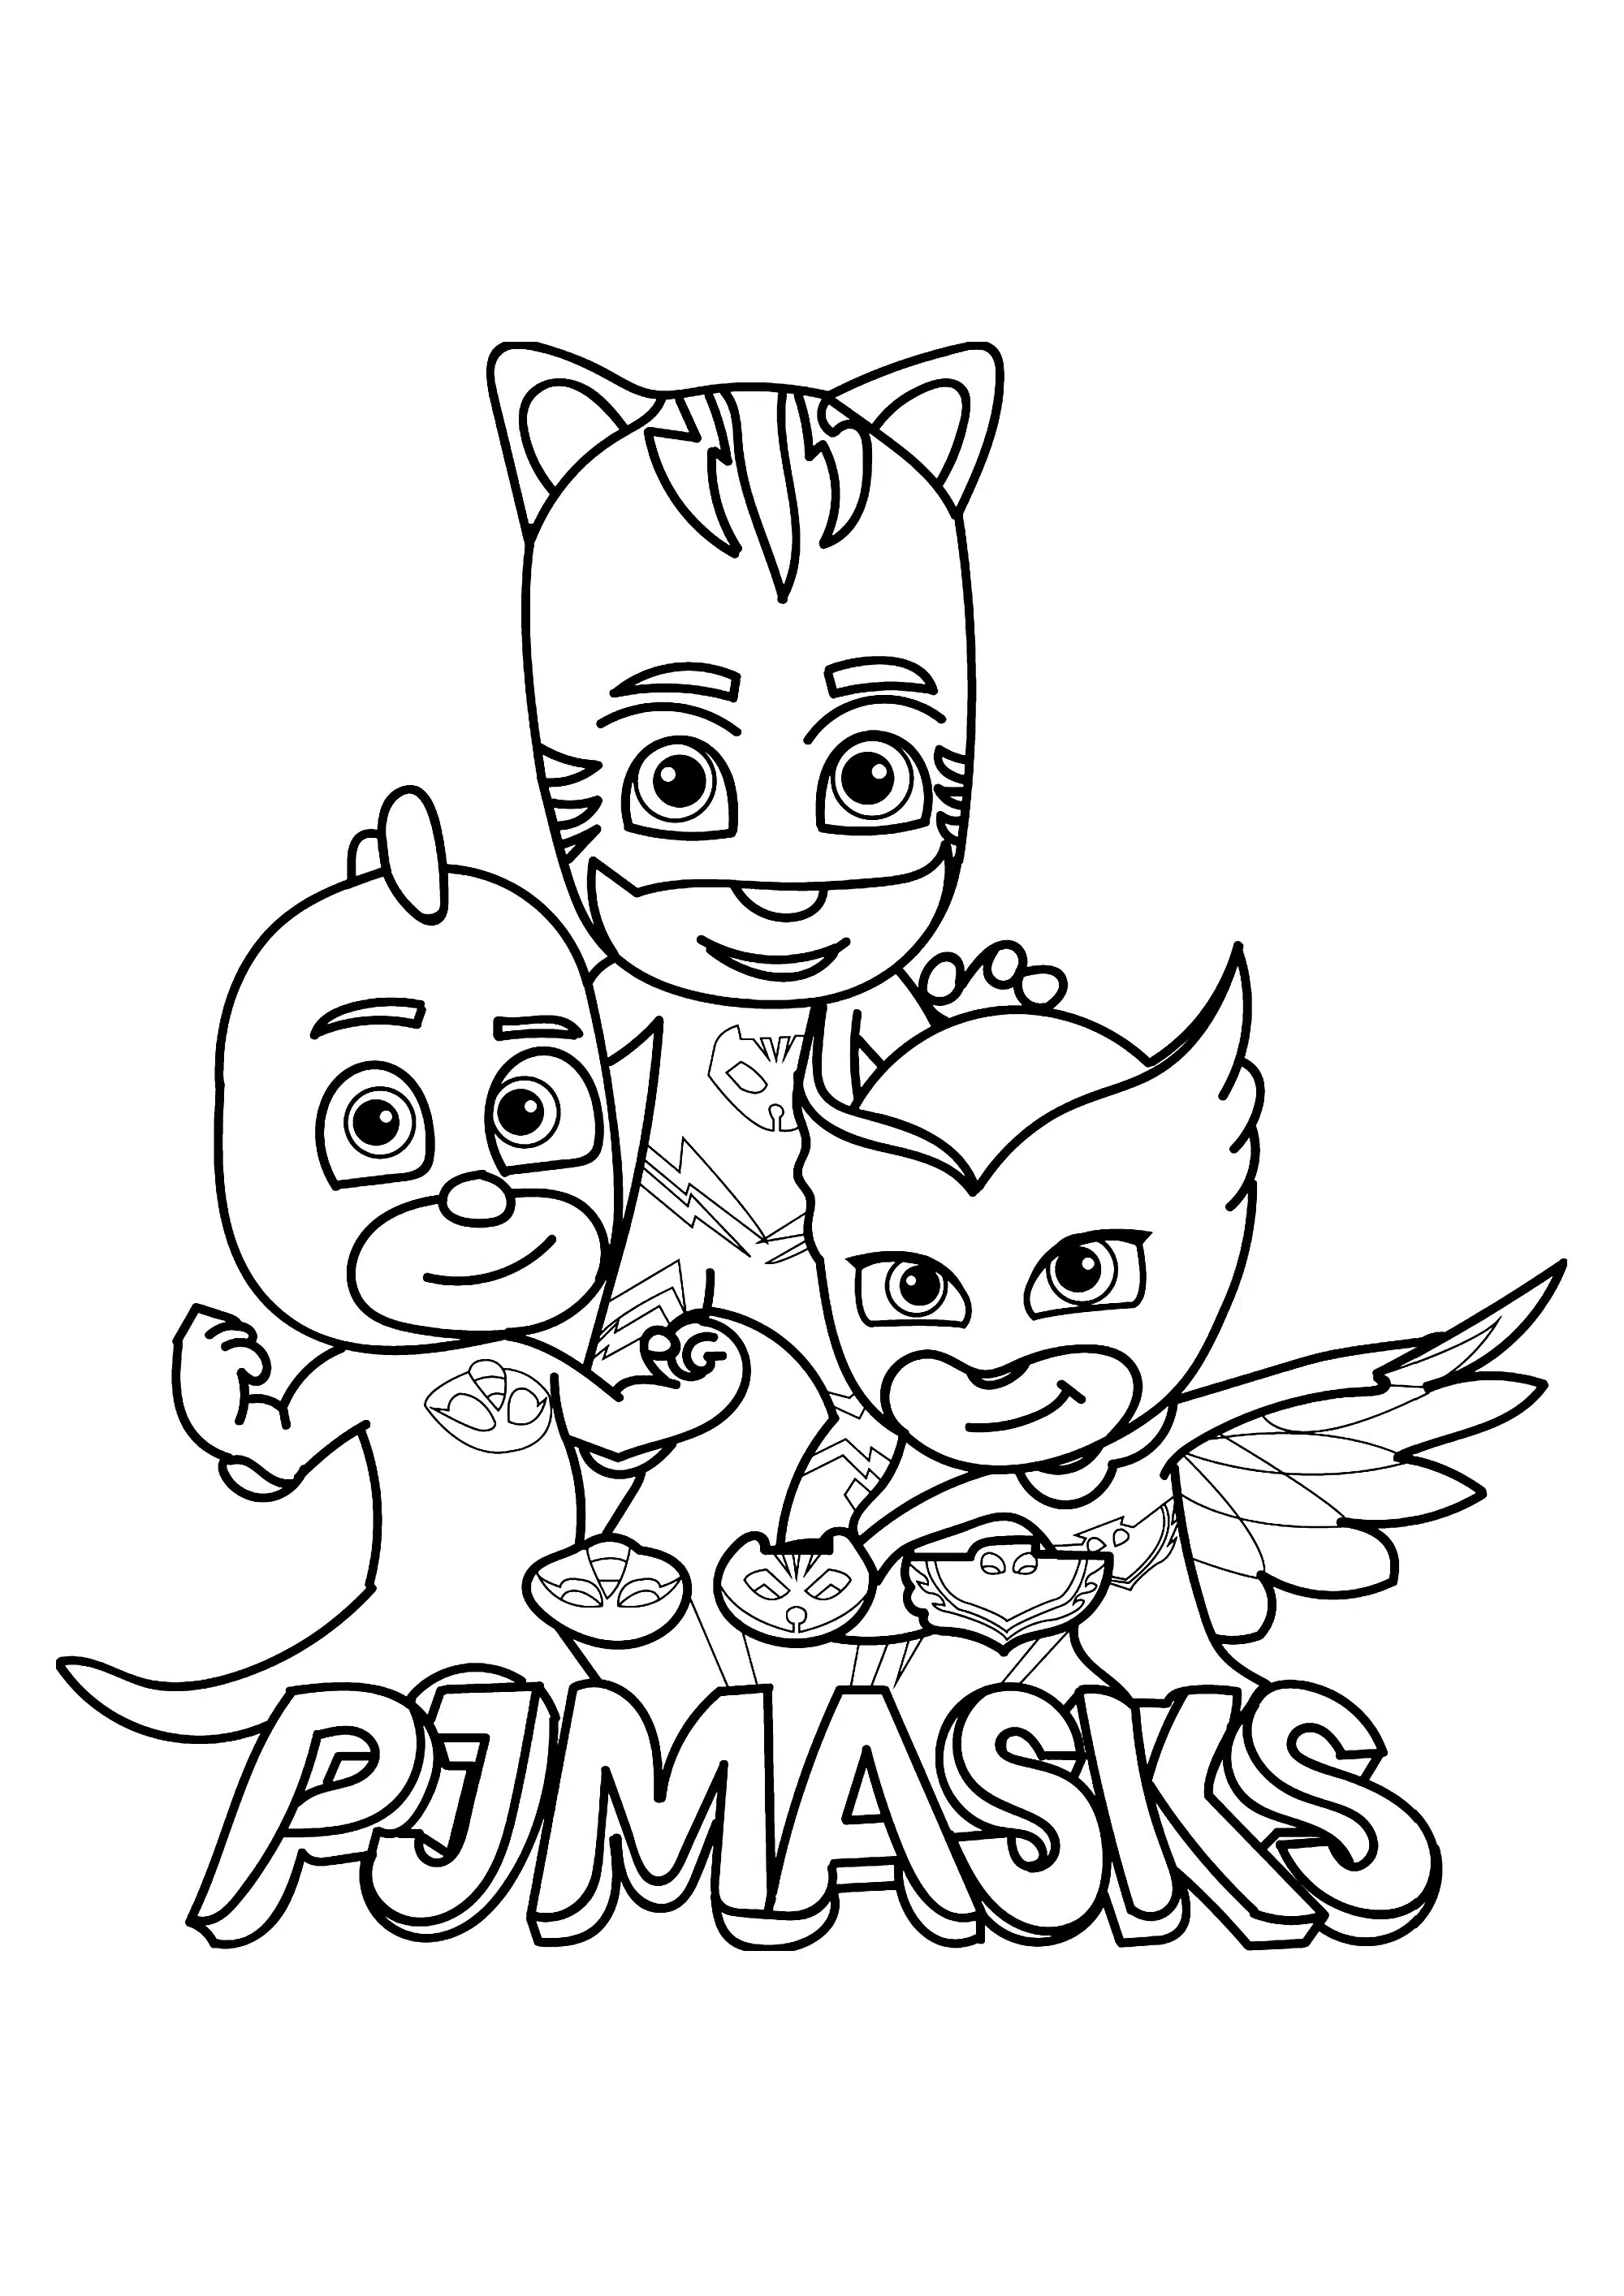 PJ masks 4